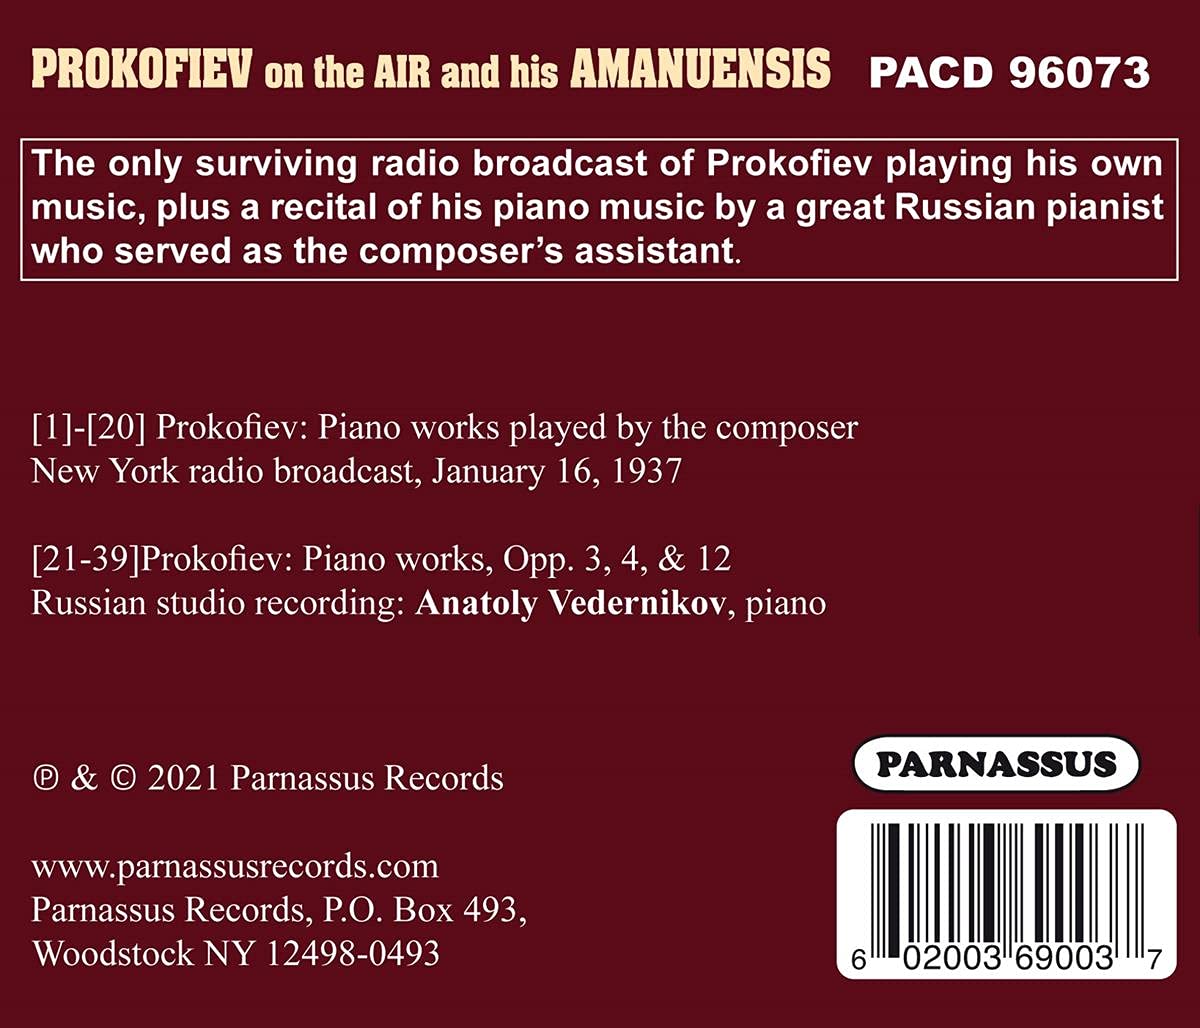 PROKOFIEV ON THE AIR - Historic Prokofiev Recordings by Sergei Prokofiev and Anatoly Vedernikov